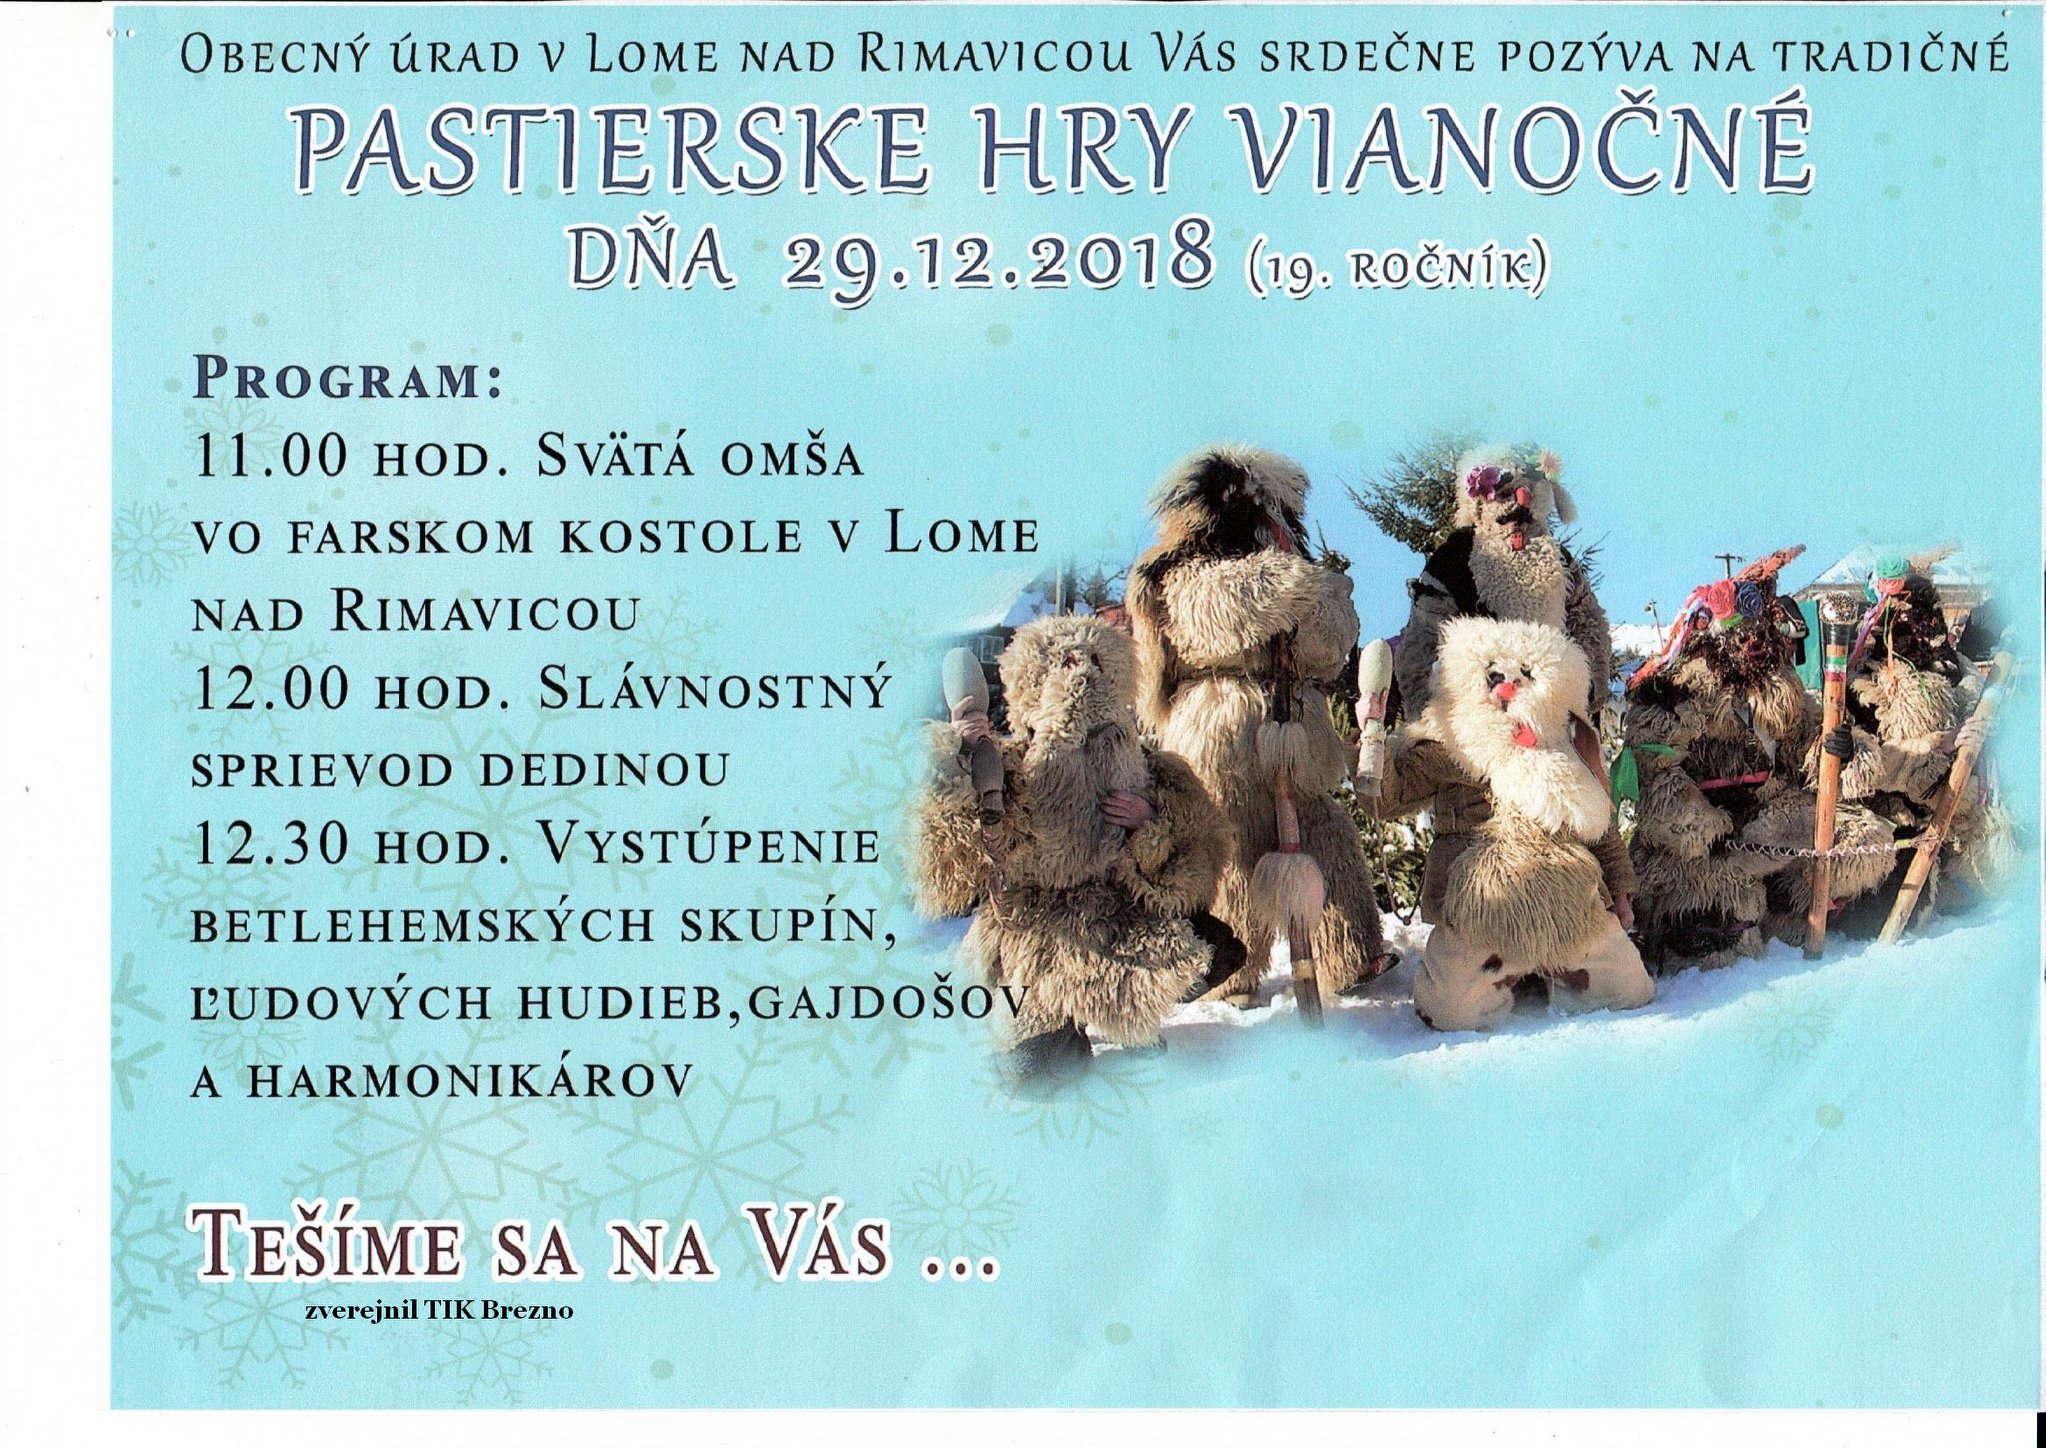 Pastierske hry vianon Lom nad Rimavicou 2018 - 19. ronk